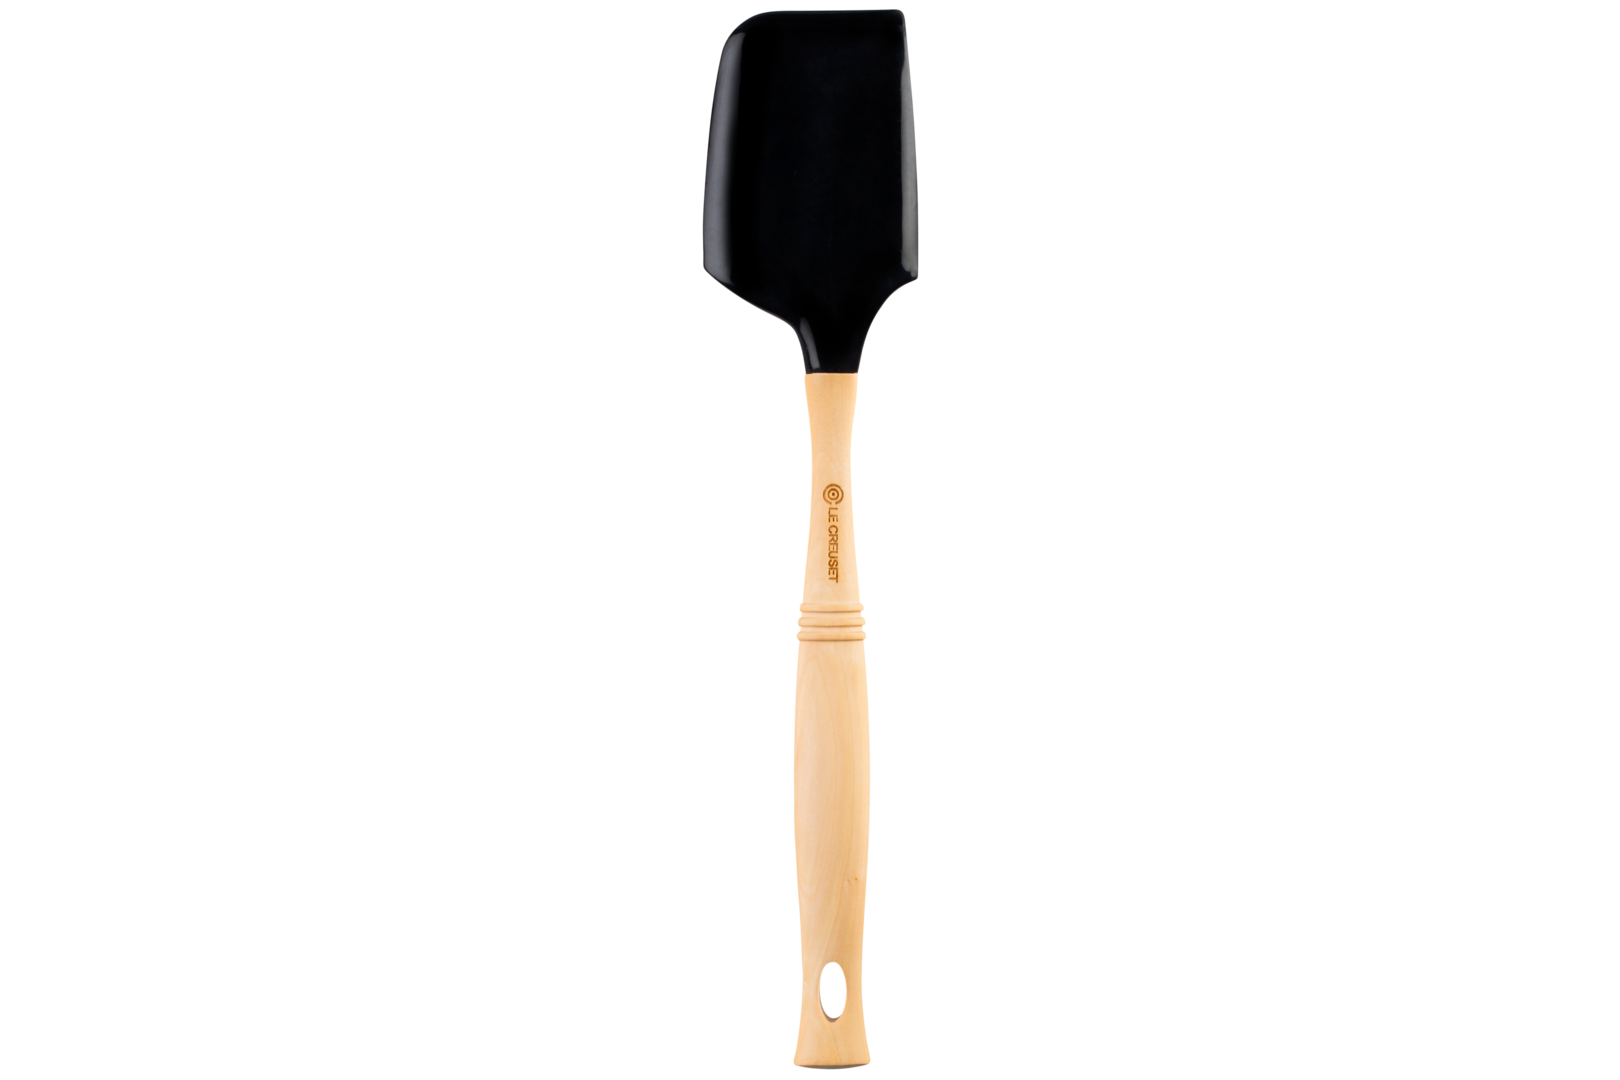 large spatula